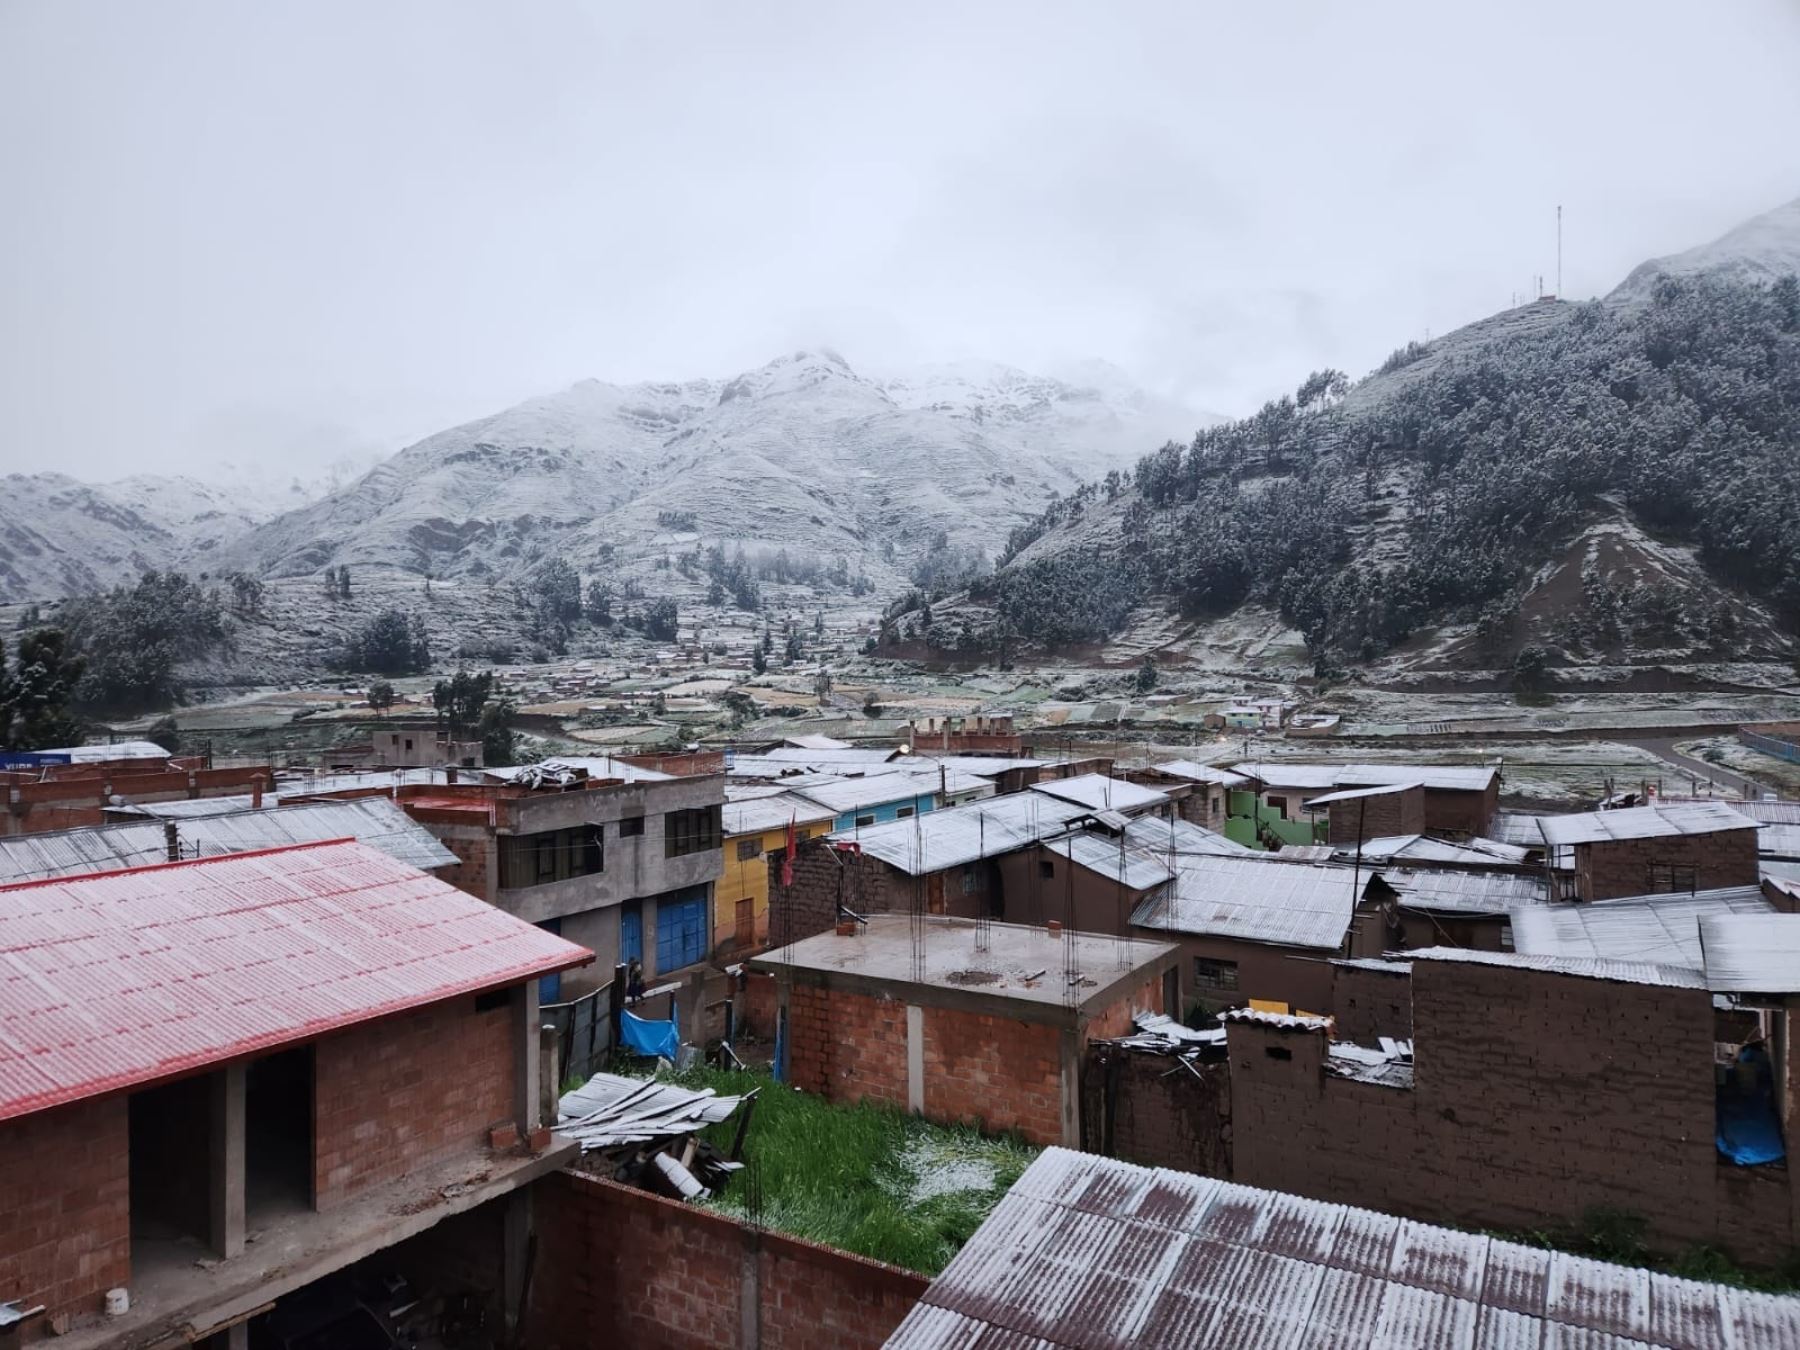 La caída de nieve que afectó a las 13 provincias de Cusco obligó a suspender las labores escolares en las zonas más afectadas por el fenómeno natural. Foto: ANDINA/Percy Hurtado Santillán.